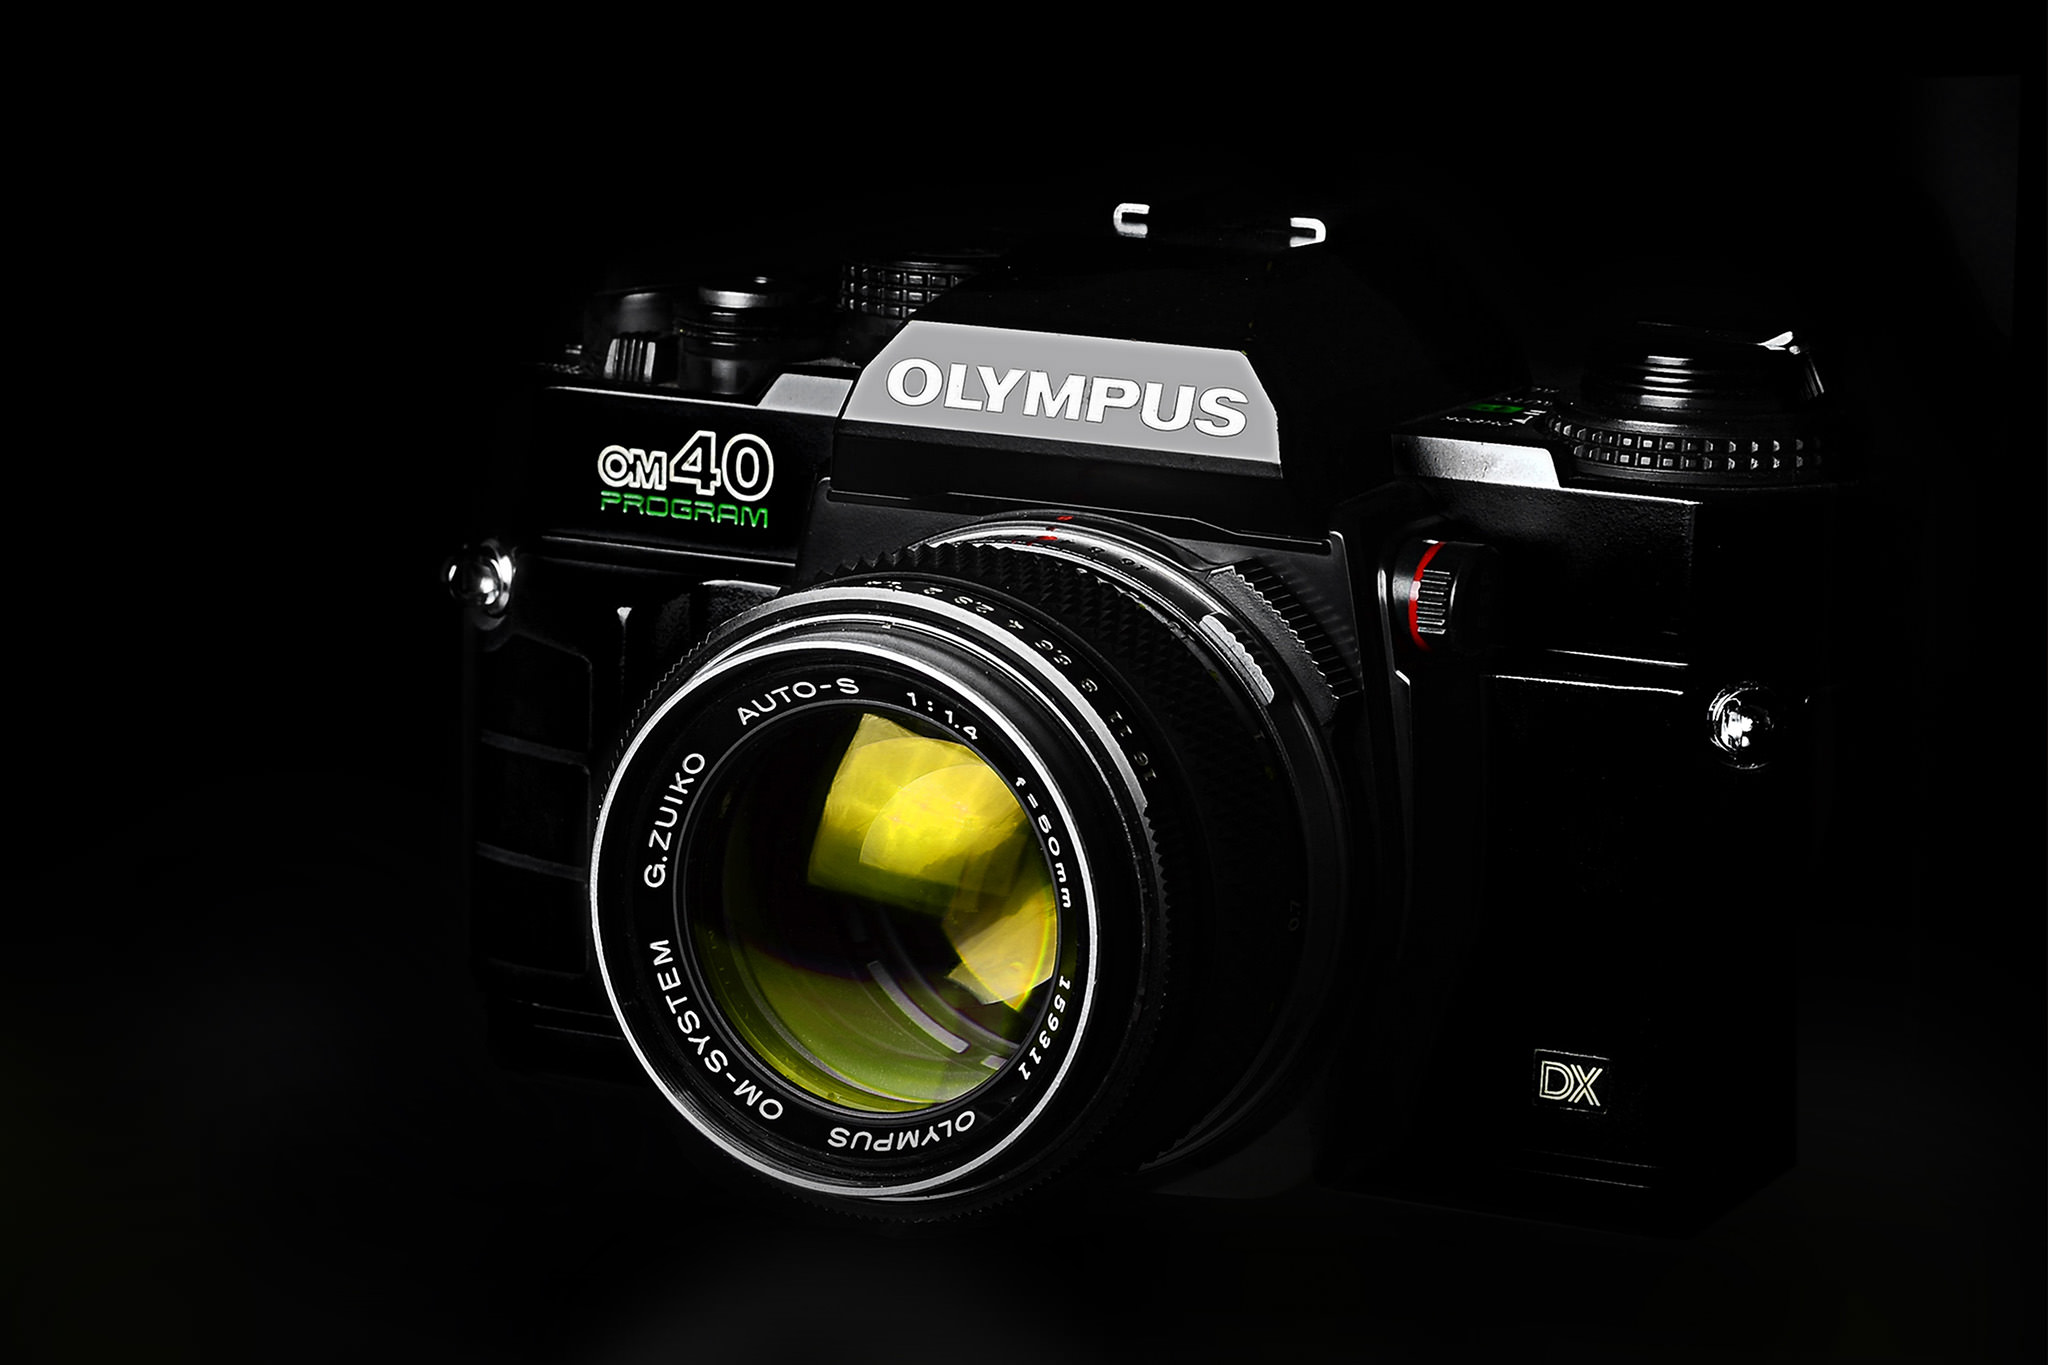 olympus-om-40-program-kamera-slr-35mm